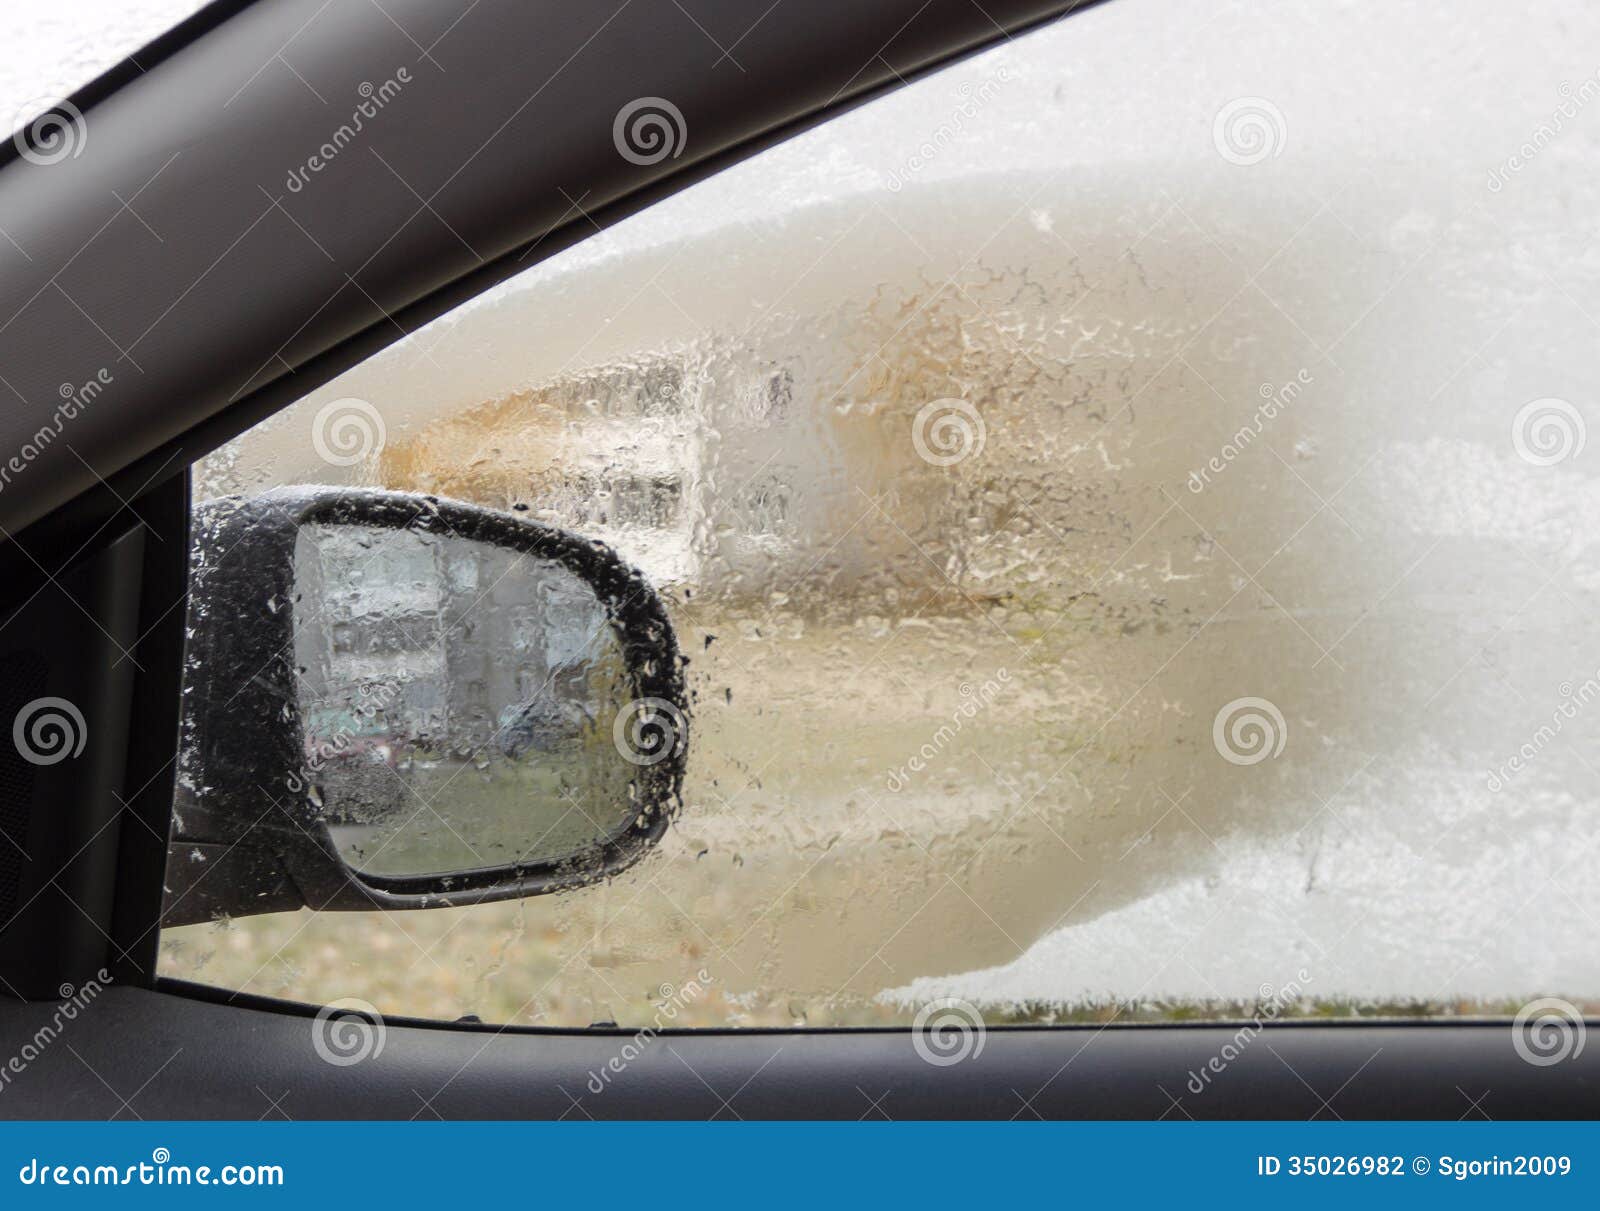 Erster Raureif Auf Dem Fenster Des Autos Stockfoto - Bild von seite, frost:  35026982